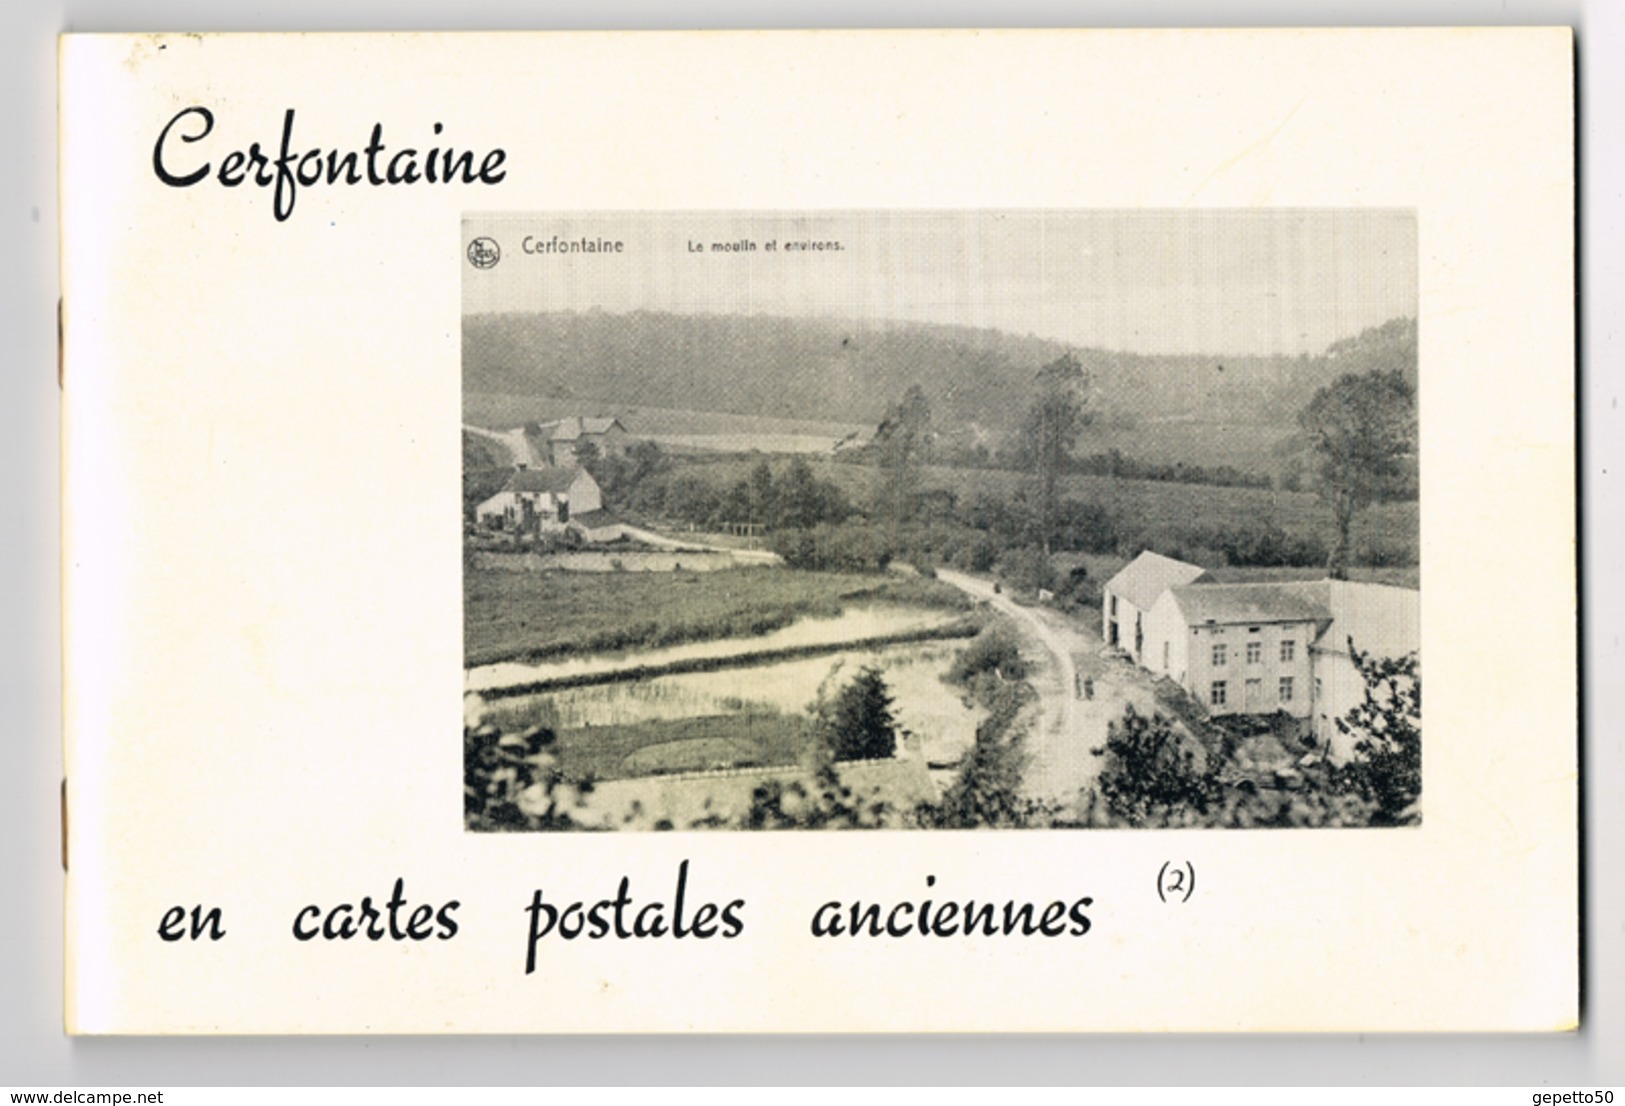 Cerfontaine Livre (n°2) De CP AnciennesEd Musée De Cerfontaine Repro De 70 Cartes - Books & Catalogues